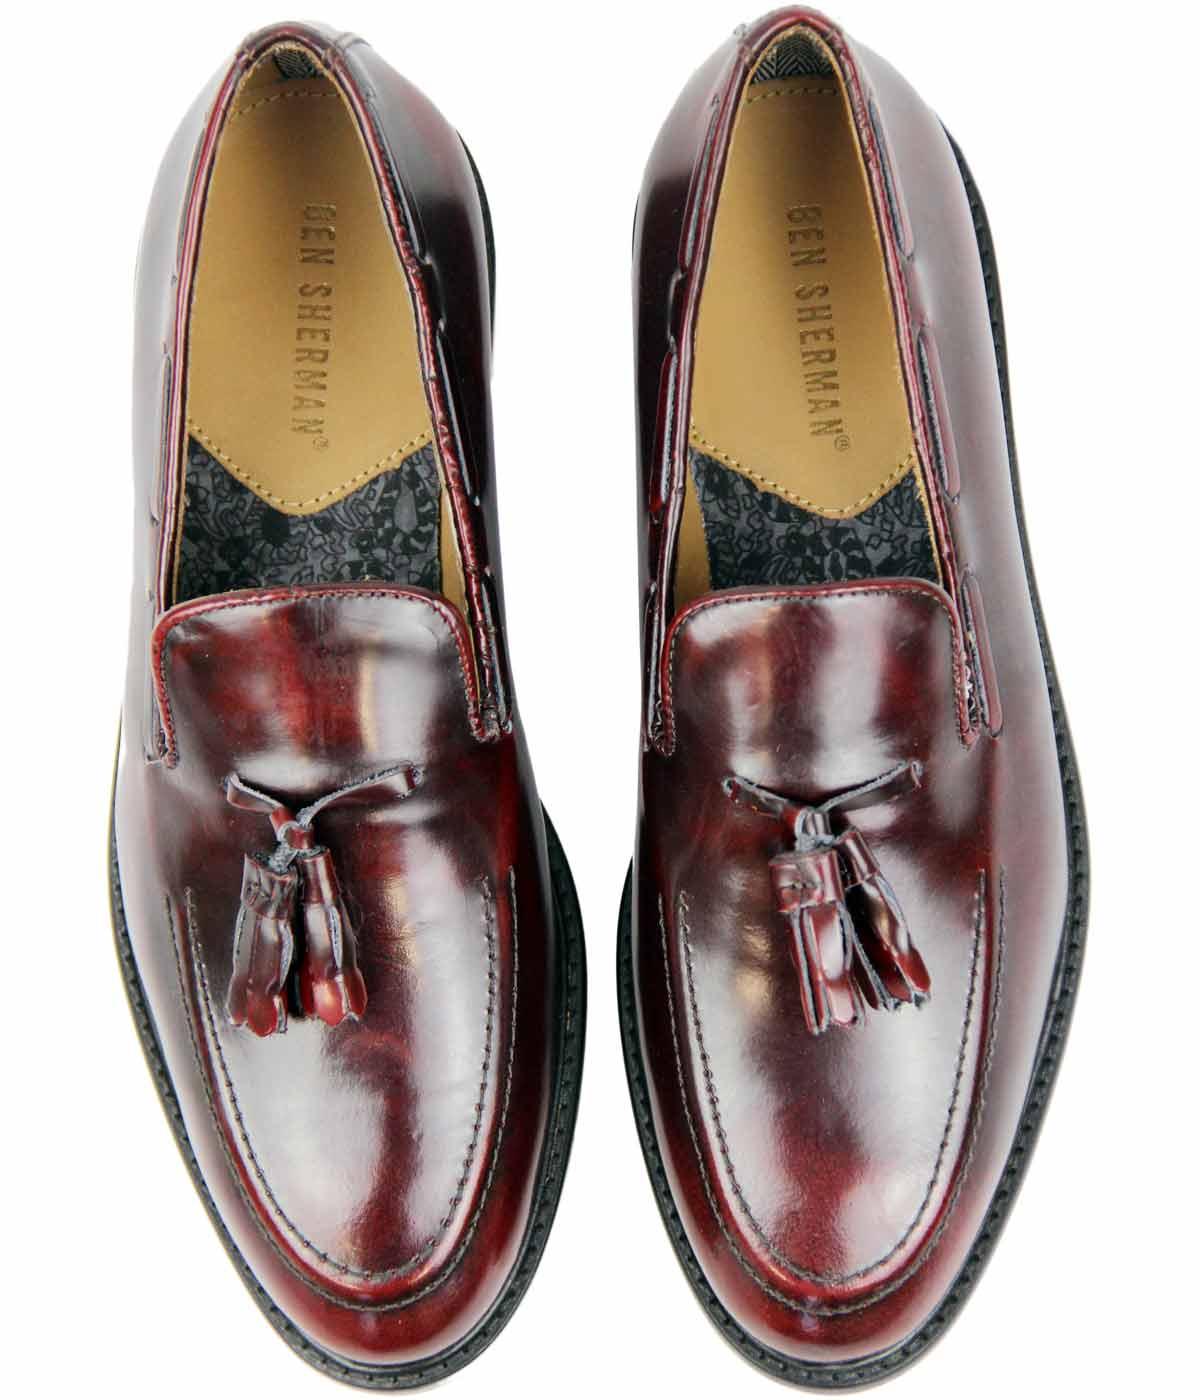 BEN SHERMAN Alfr City Loafers Mod Tassel Loafer Shoes Burgundy